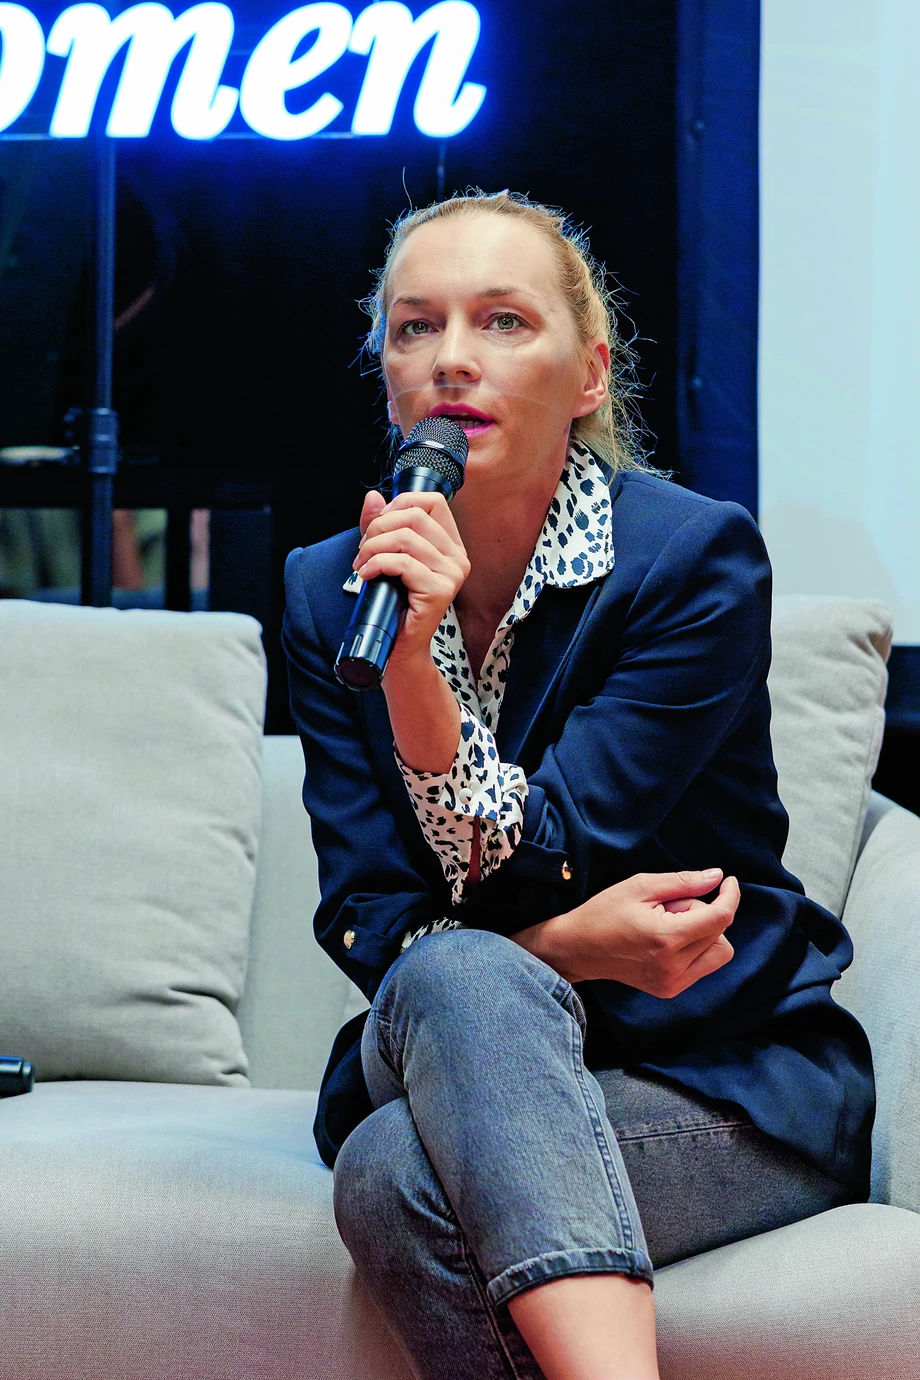 Aktorka Agnieszka Przepiórska mówiła o bolesnych skutkach wtłaczania kobiet w patriarchalne role.